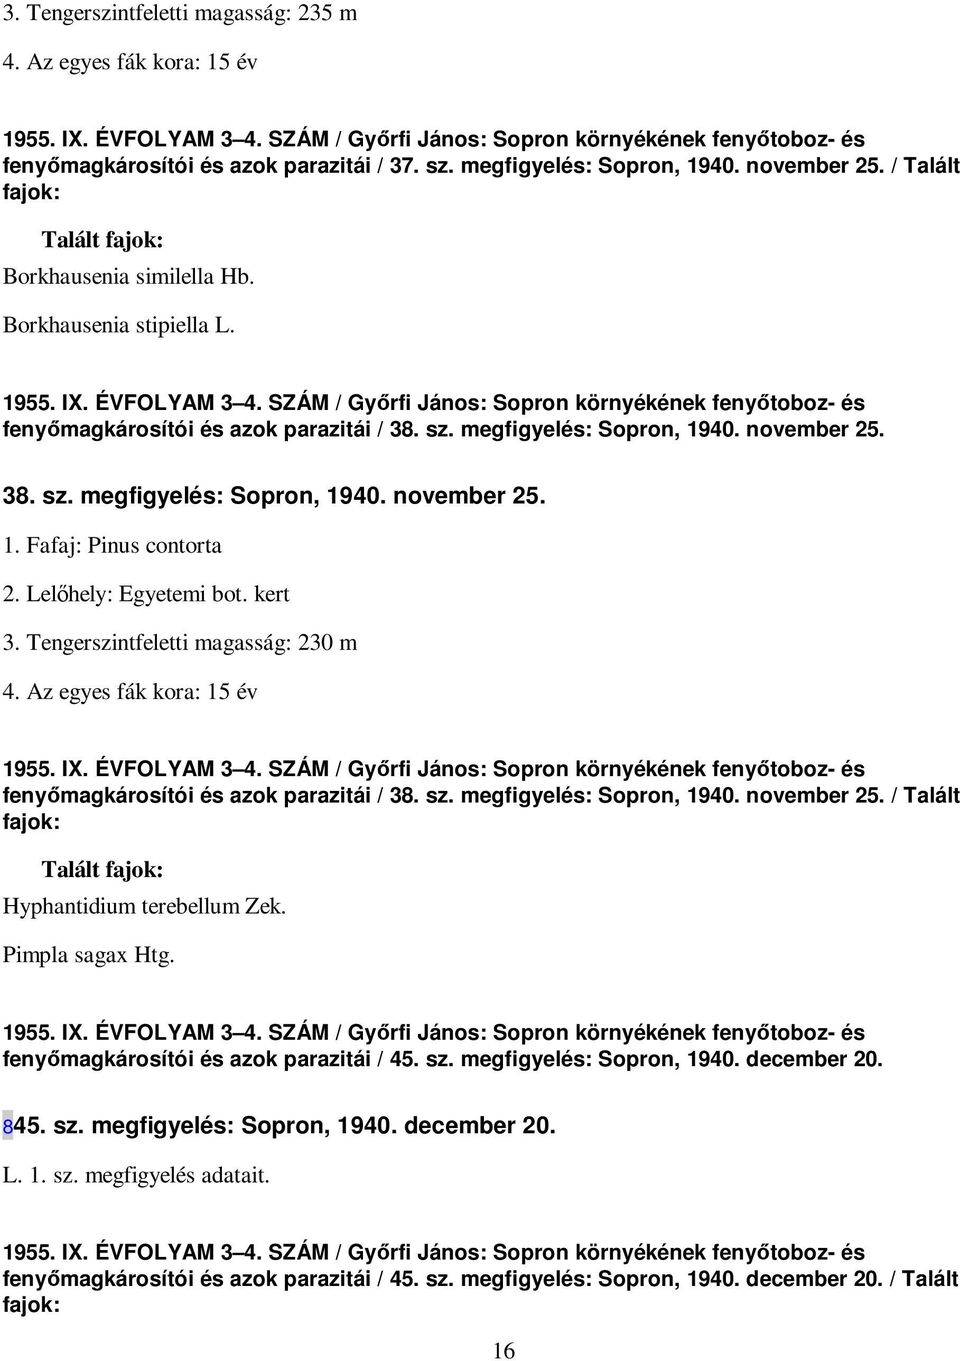 SZÁM / Gyırfi János: Sopron környékének fenyıtoboz- és fenyımagkárosítói és azok parazitái / 38. sz. megfigyelés: Sopron, 1940. november 25. 38. sz. megfigyelés: Sopron, 1940. november 25. 1. Fafaj: Pinus contorta 2.